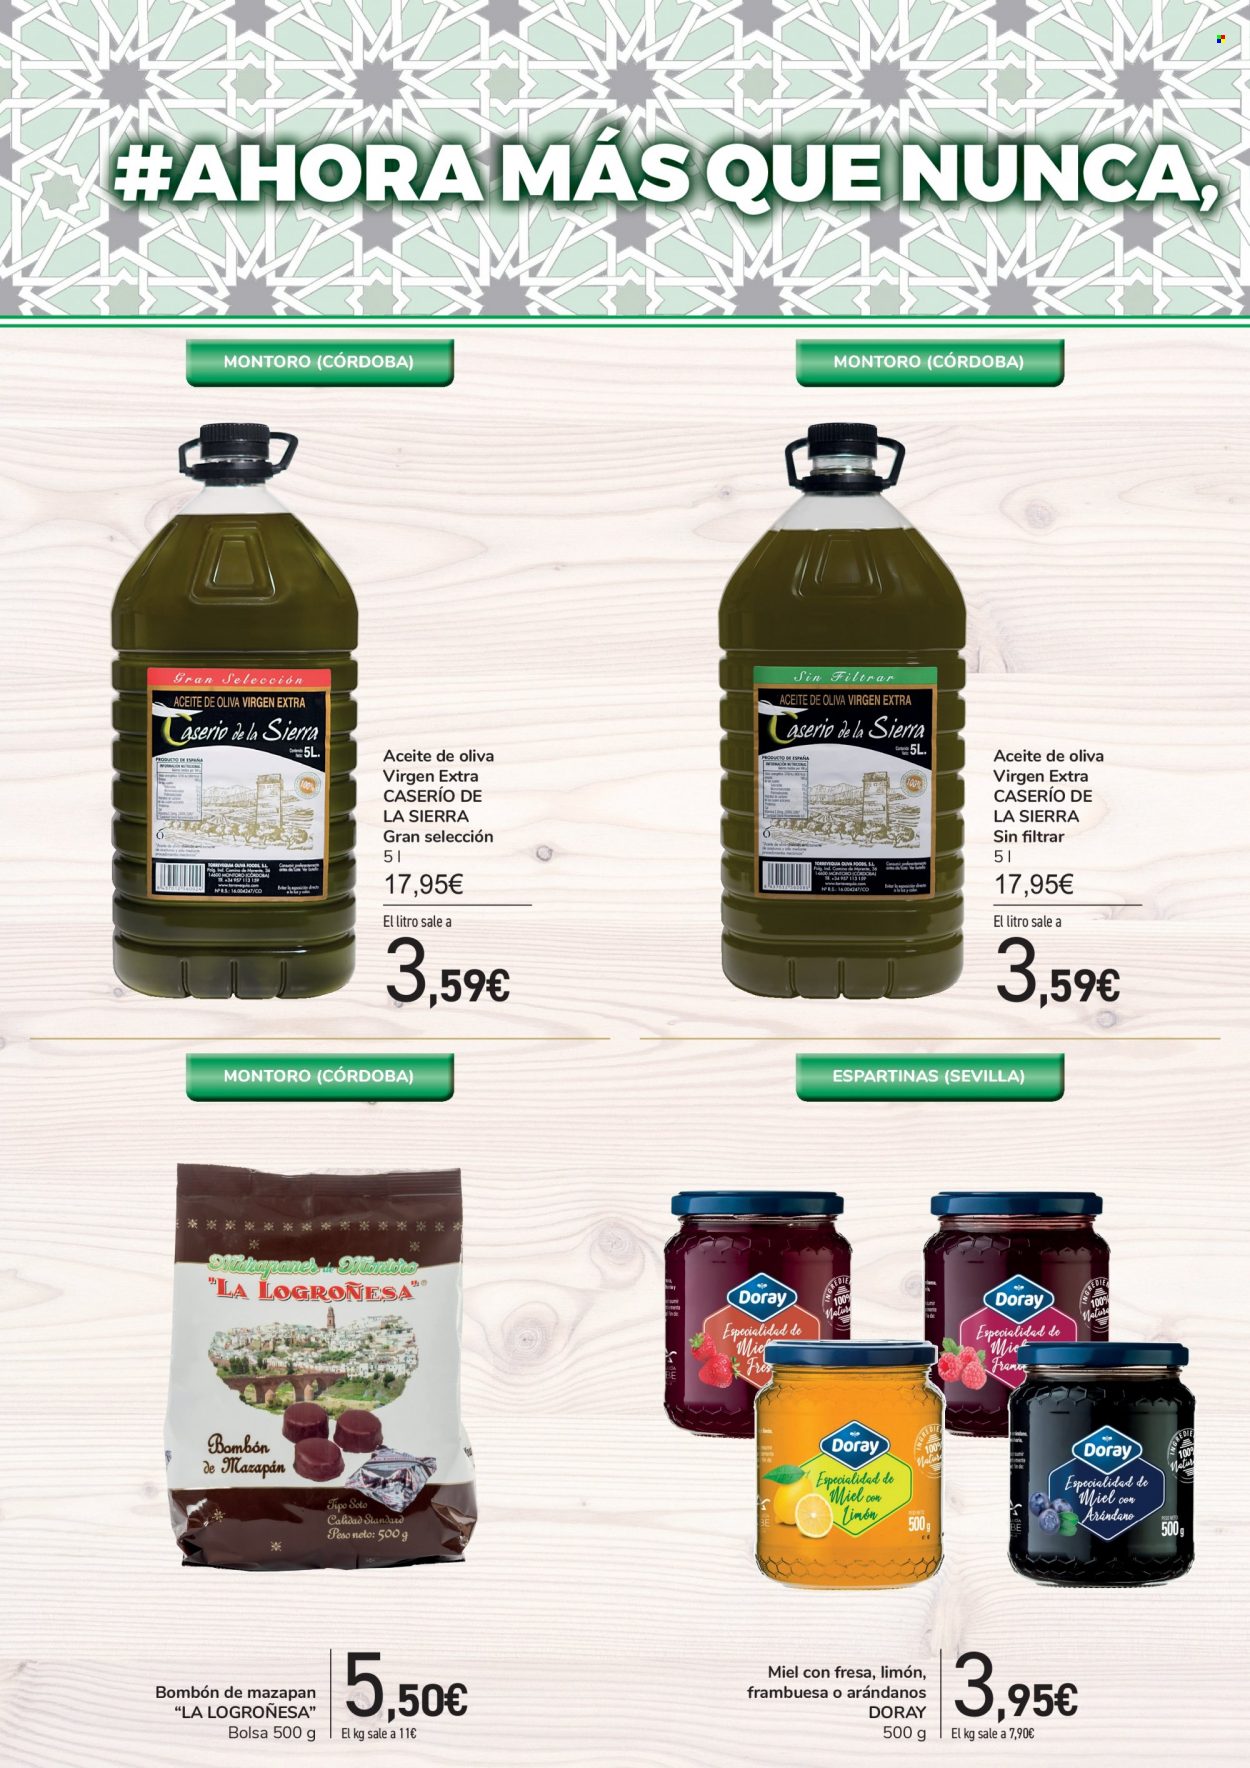 thumbnail - Folleto actual Carrefour - 10/11/21 - 25/11/21 - Ventas - bombones, aceite de oliva, aceite de oliva extra virgen, Caserio de la Sierra, bolso. Página 34.